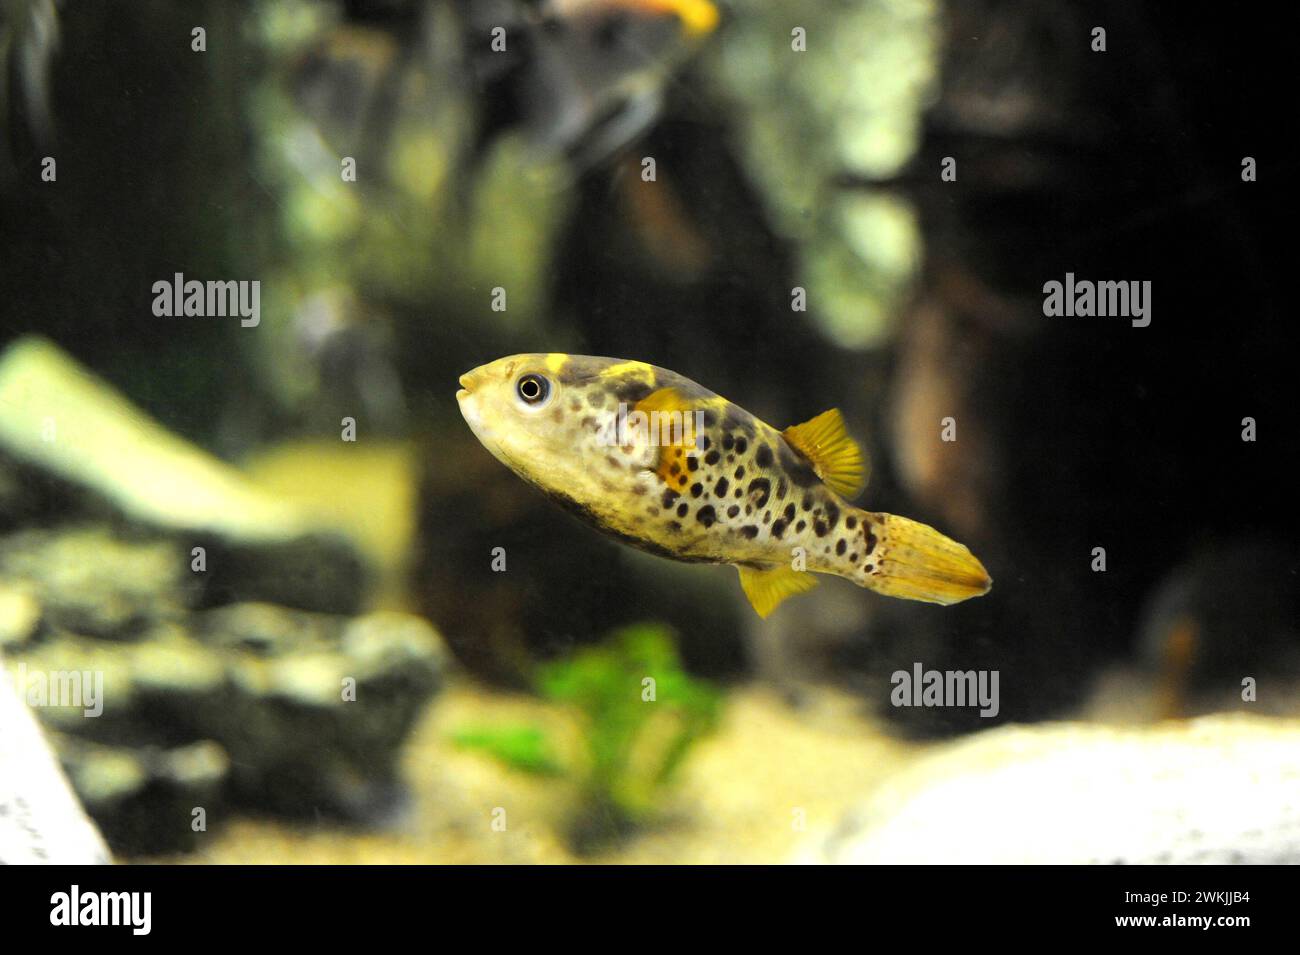 Kugelfisch (Tetraodon schoutedeni) ist ein Süßwasserfisch aus dem Kongo-Flussbecken. Stockfoto